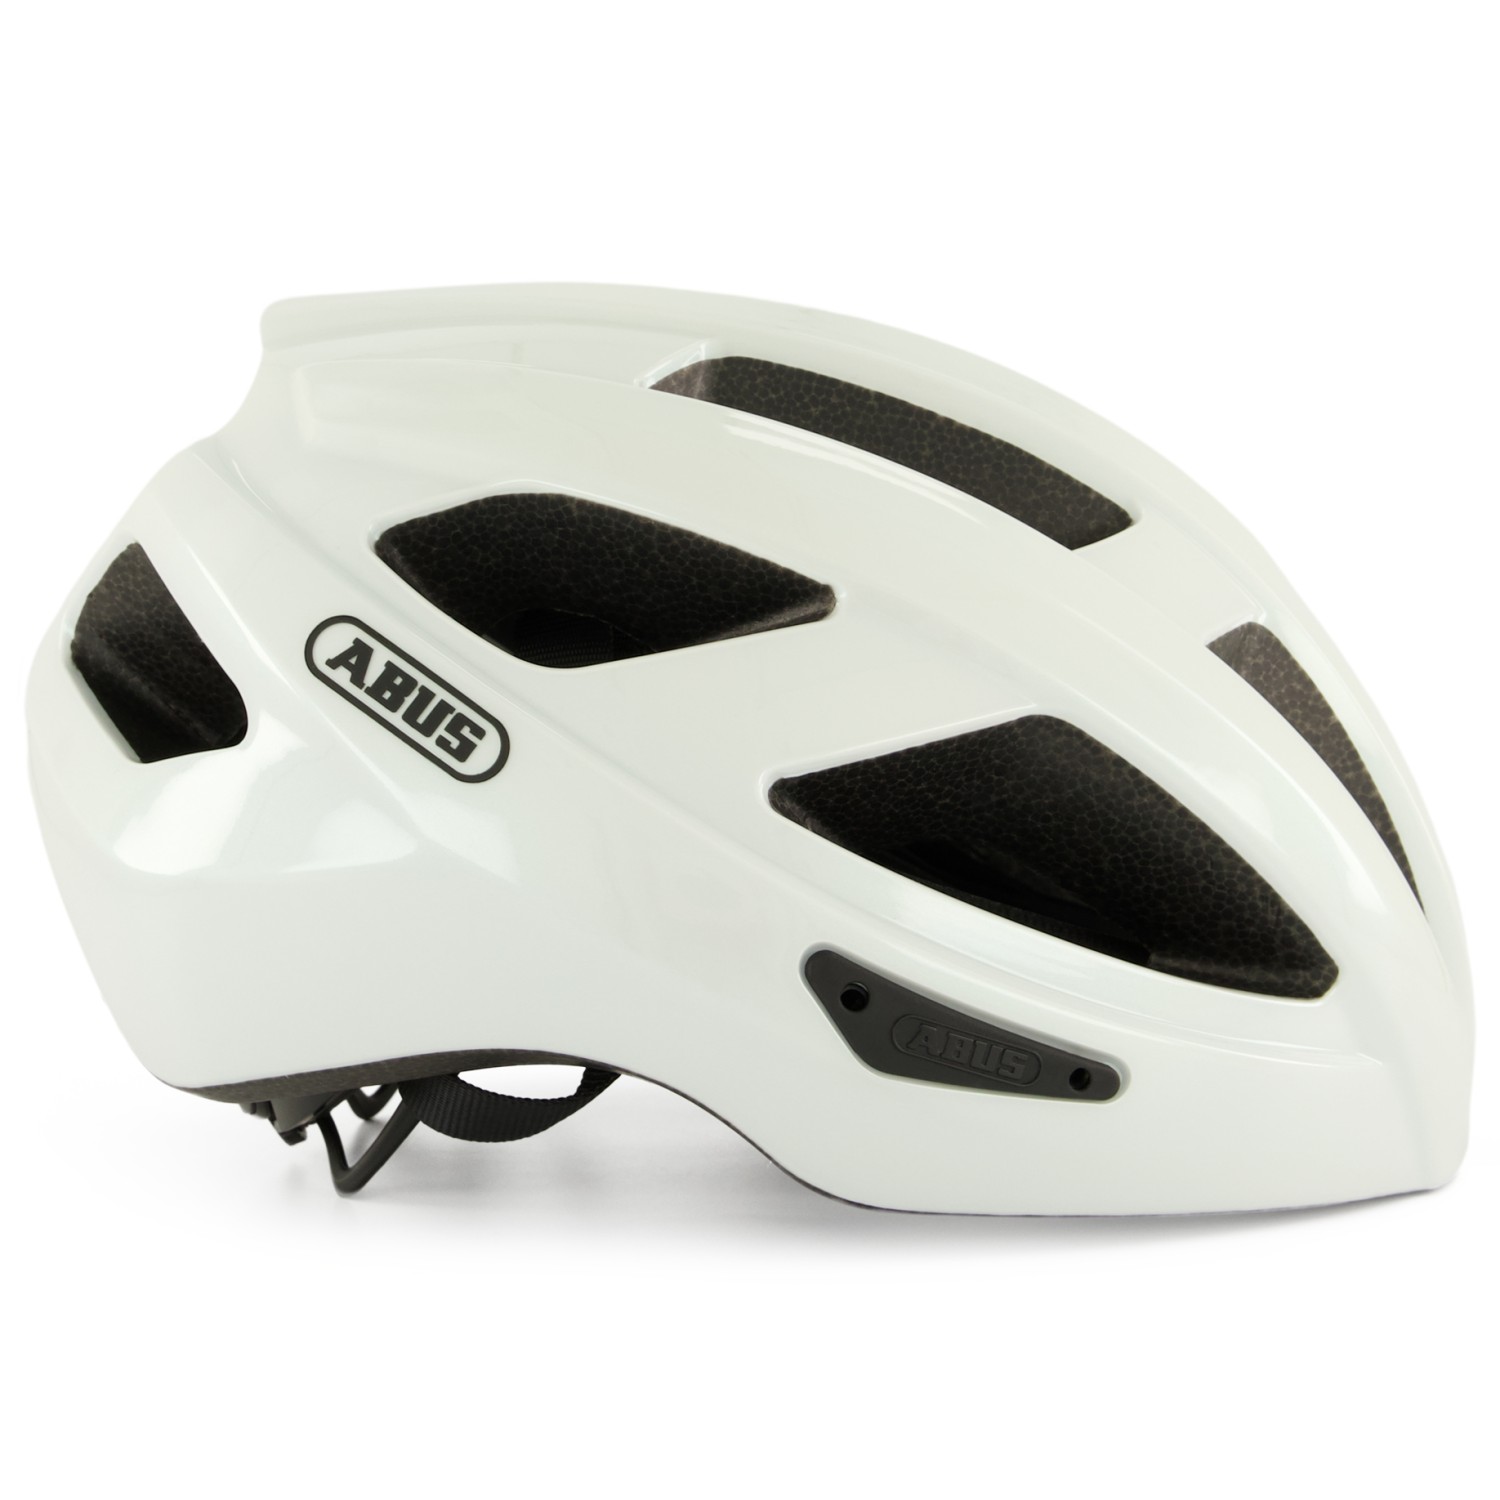 Велосипедный шлем Abus Macator, цвет Pearl White